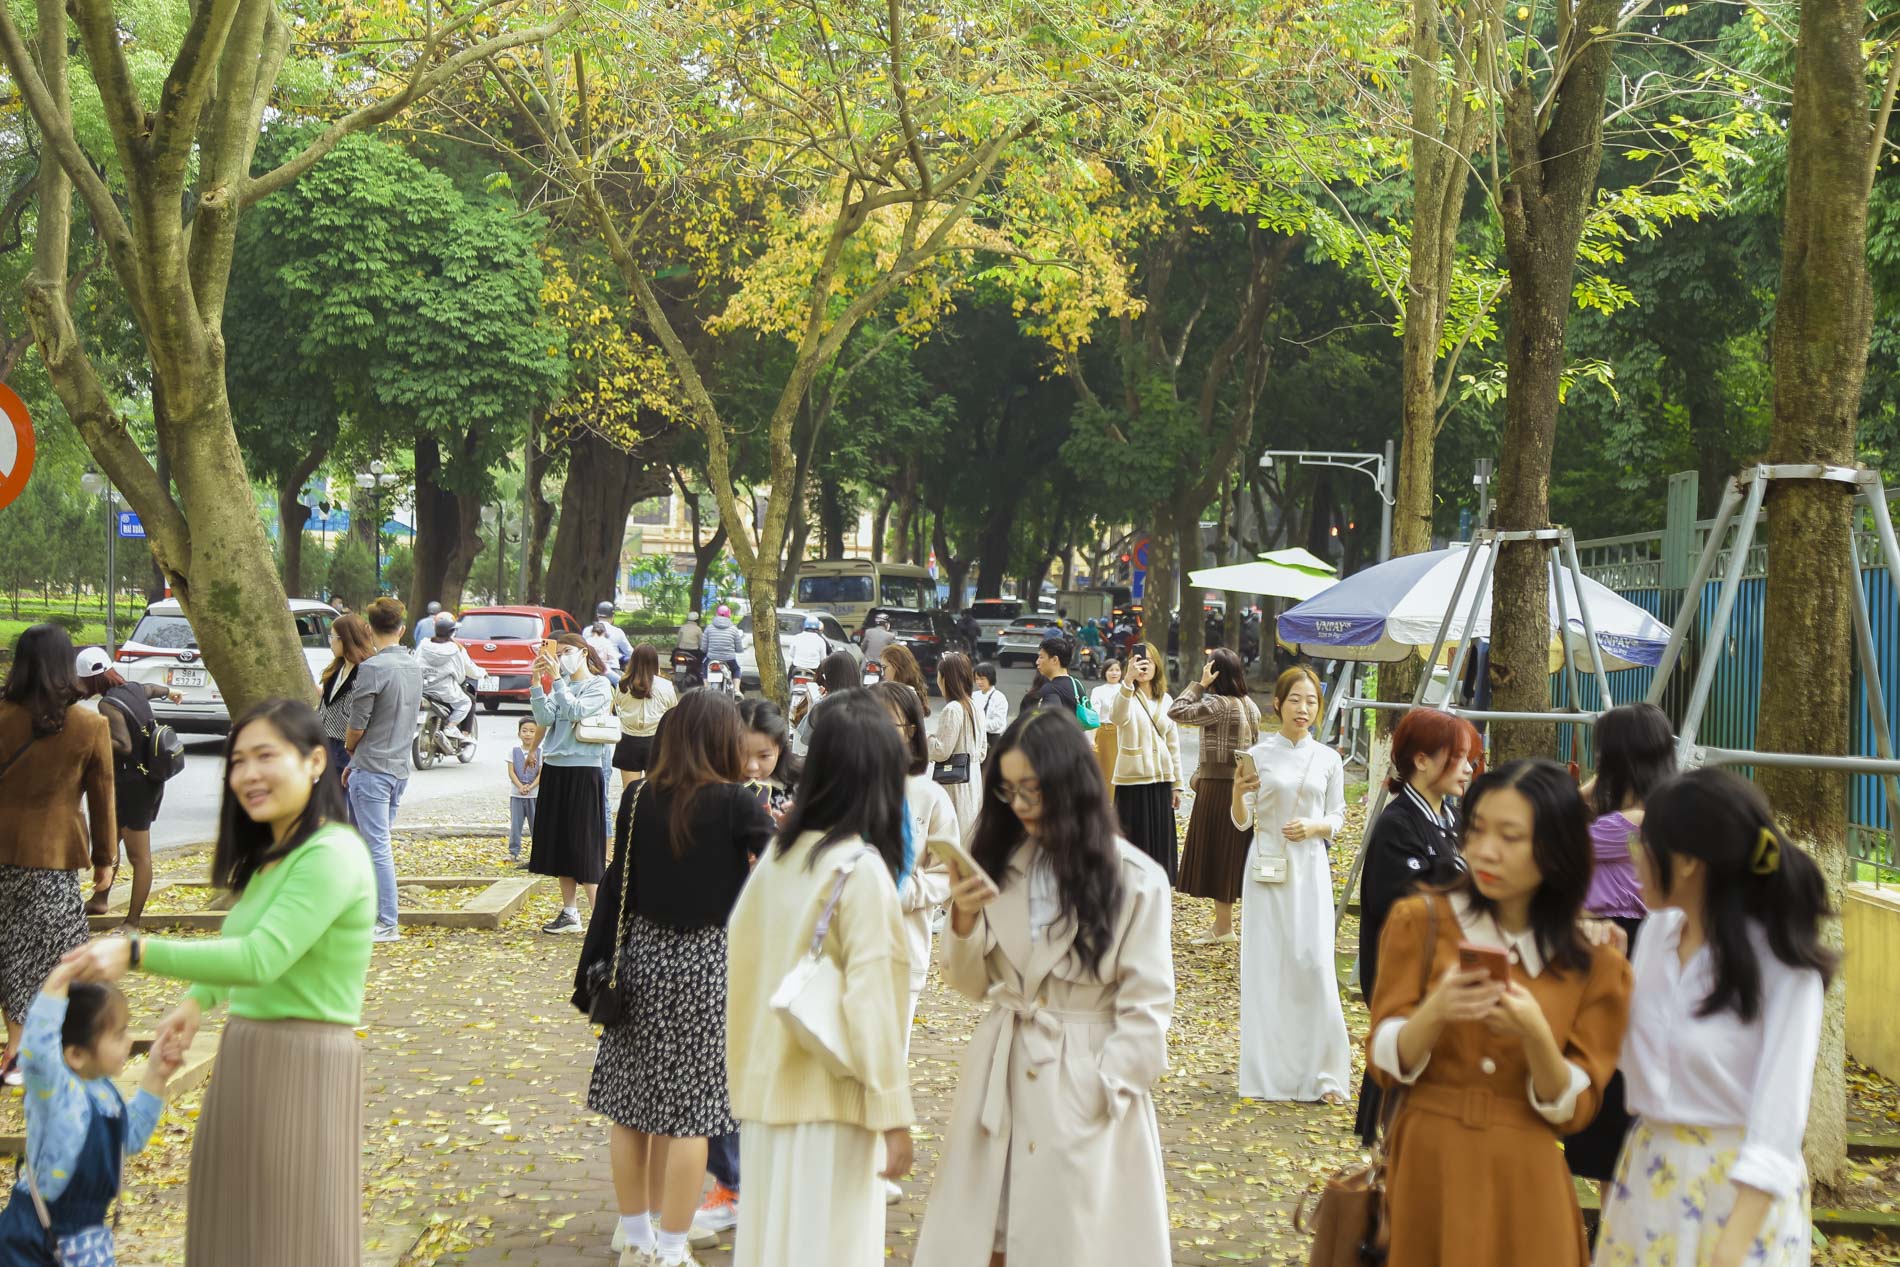 Thuê quần áo và ekip để chụp ảnh tại con đường lá vàng đẹp như cảnh thu Hàn Quốc ở Hà Nội - Ảnh 4.